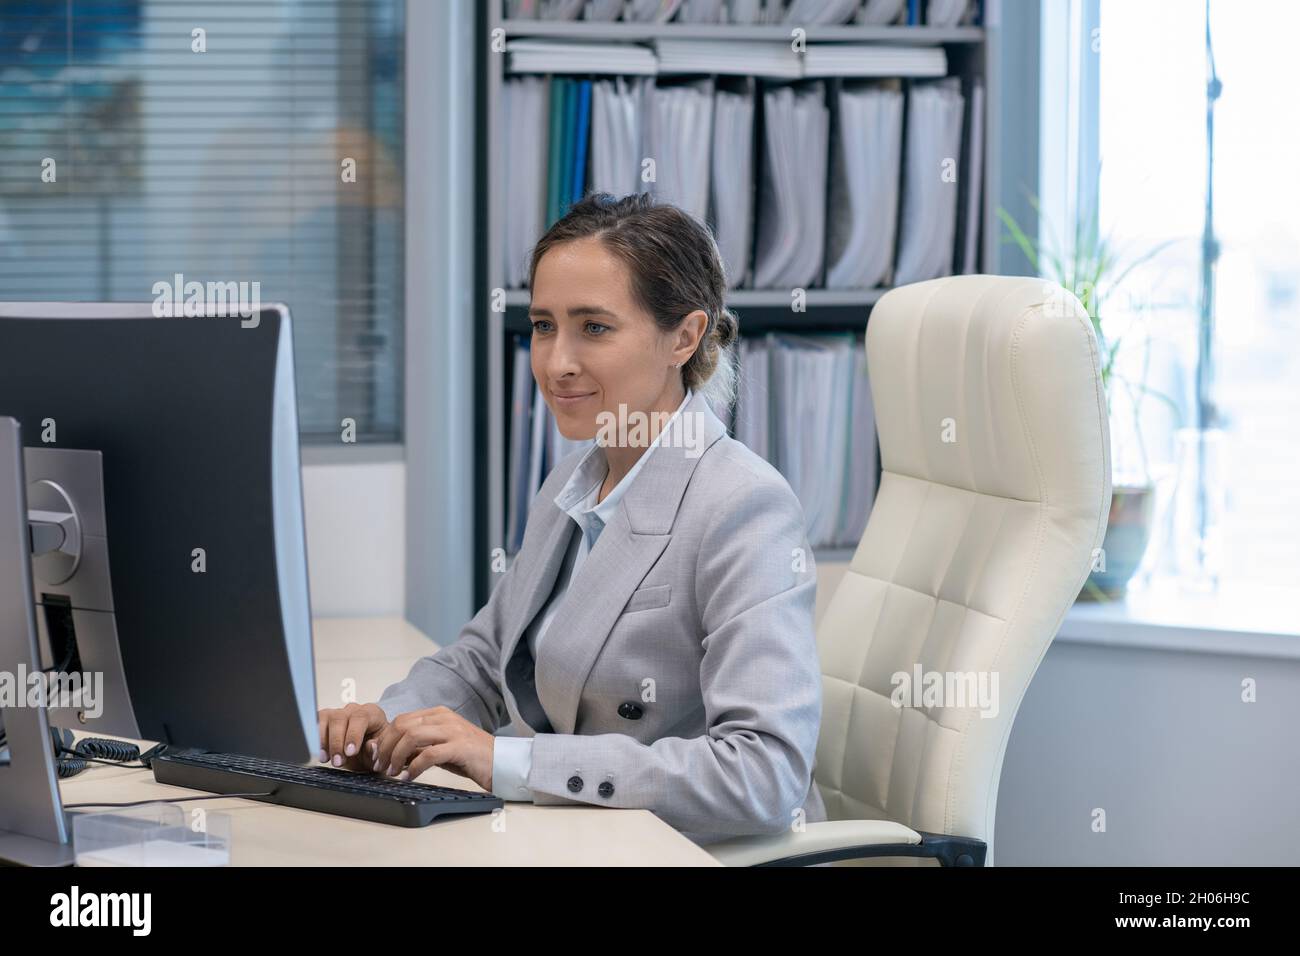 Femme d'affaires contemporaine travaillant devant un ordinateur près de son lieu de travail Banque D'Images